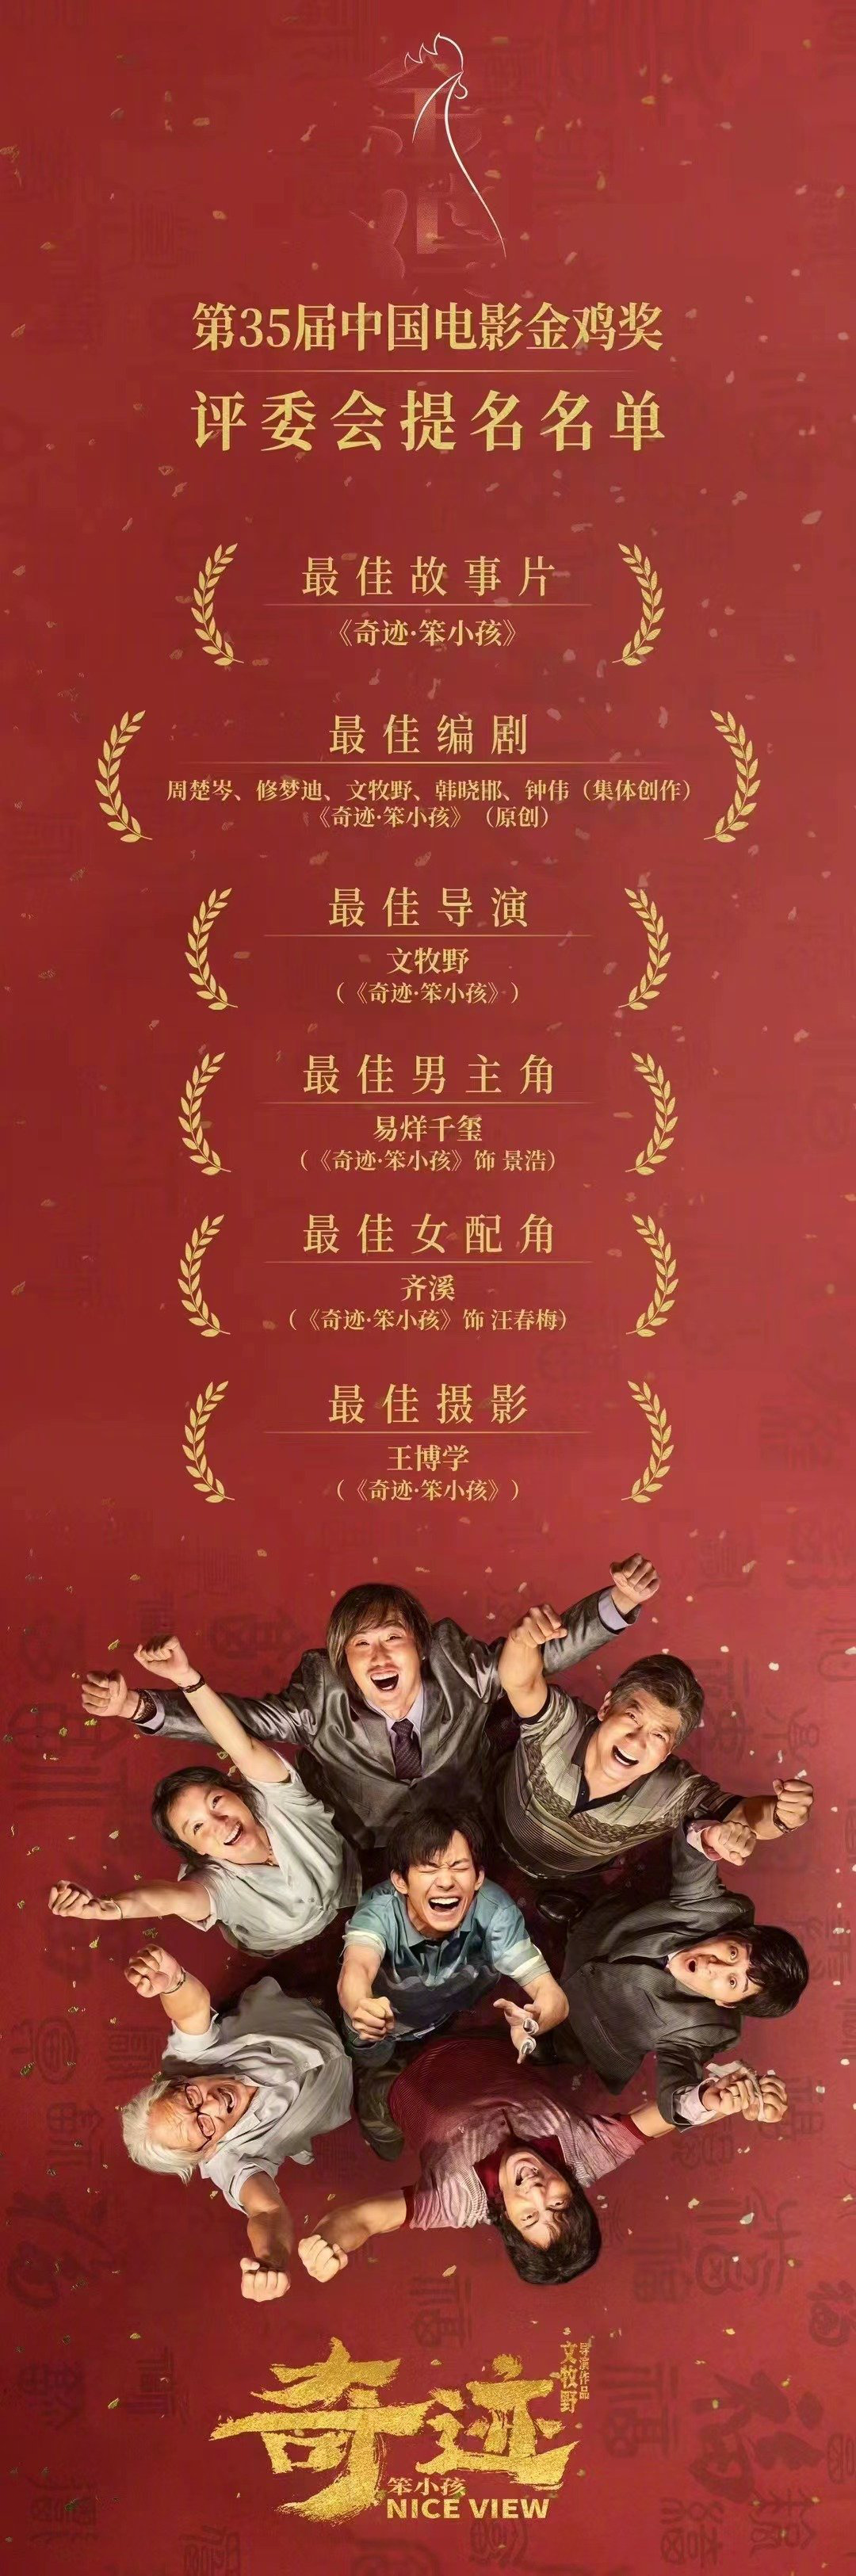 速览！第35届中国电影金鸡奖提名影片成绩单海报